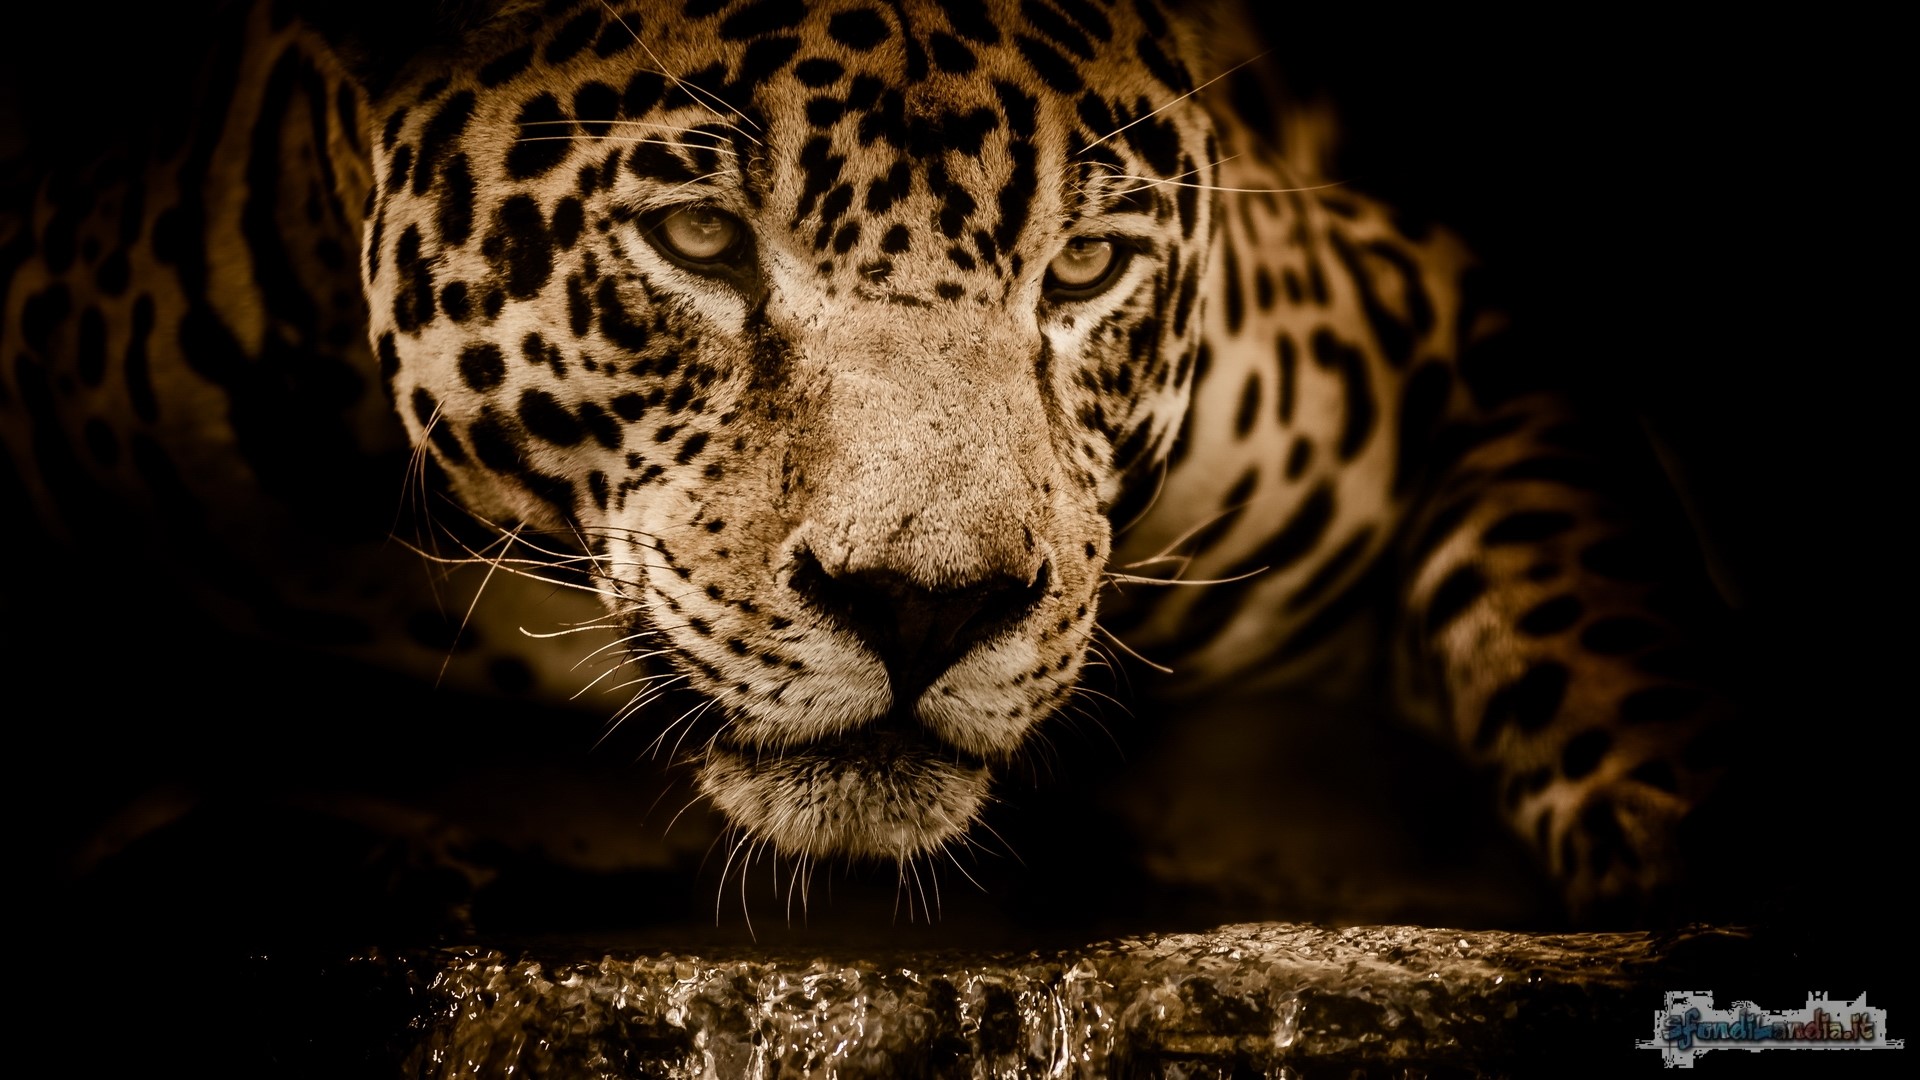 Jaguar
Jaguar Eyes